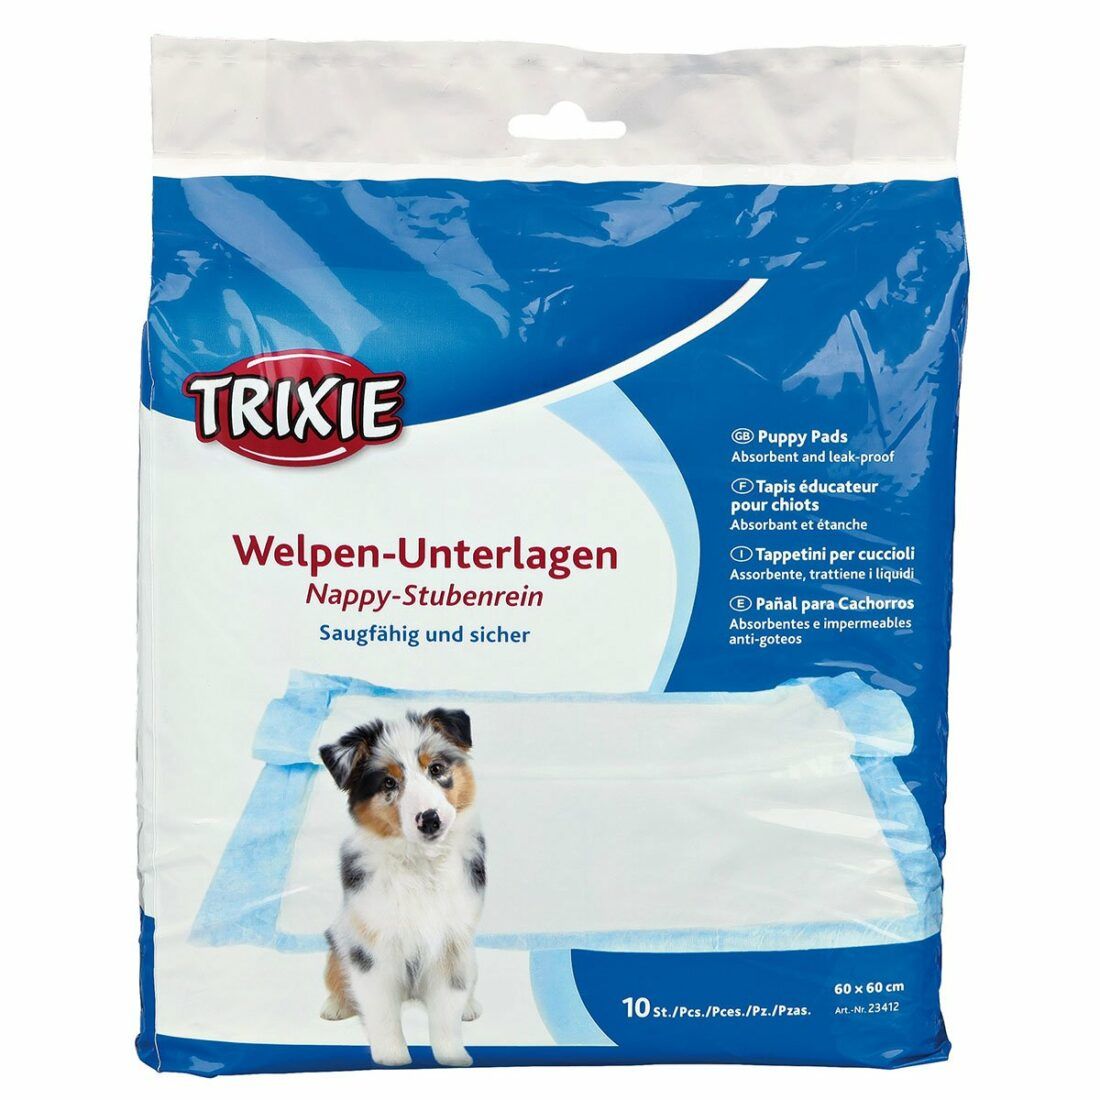 Trixie Welpen-Unterlage Nappy-Stubenrein podložka pro štěňata